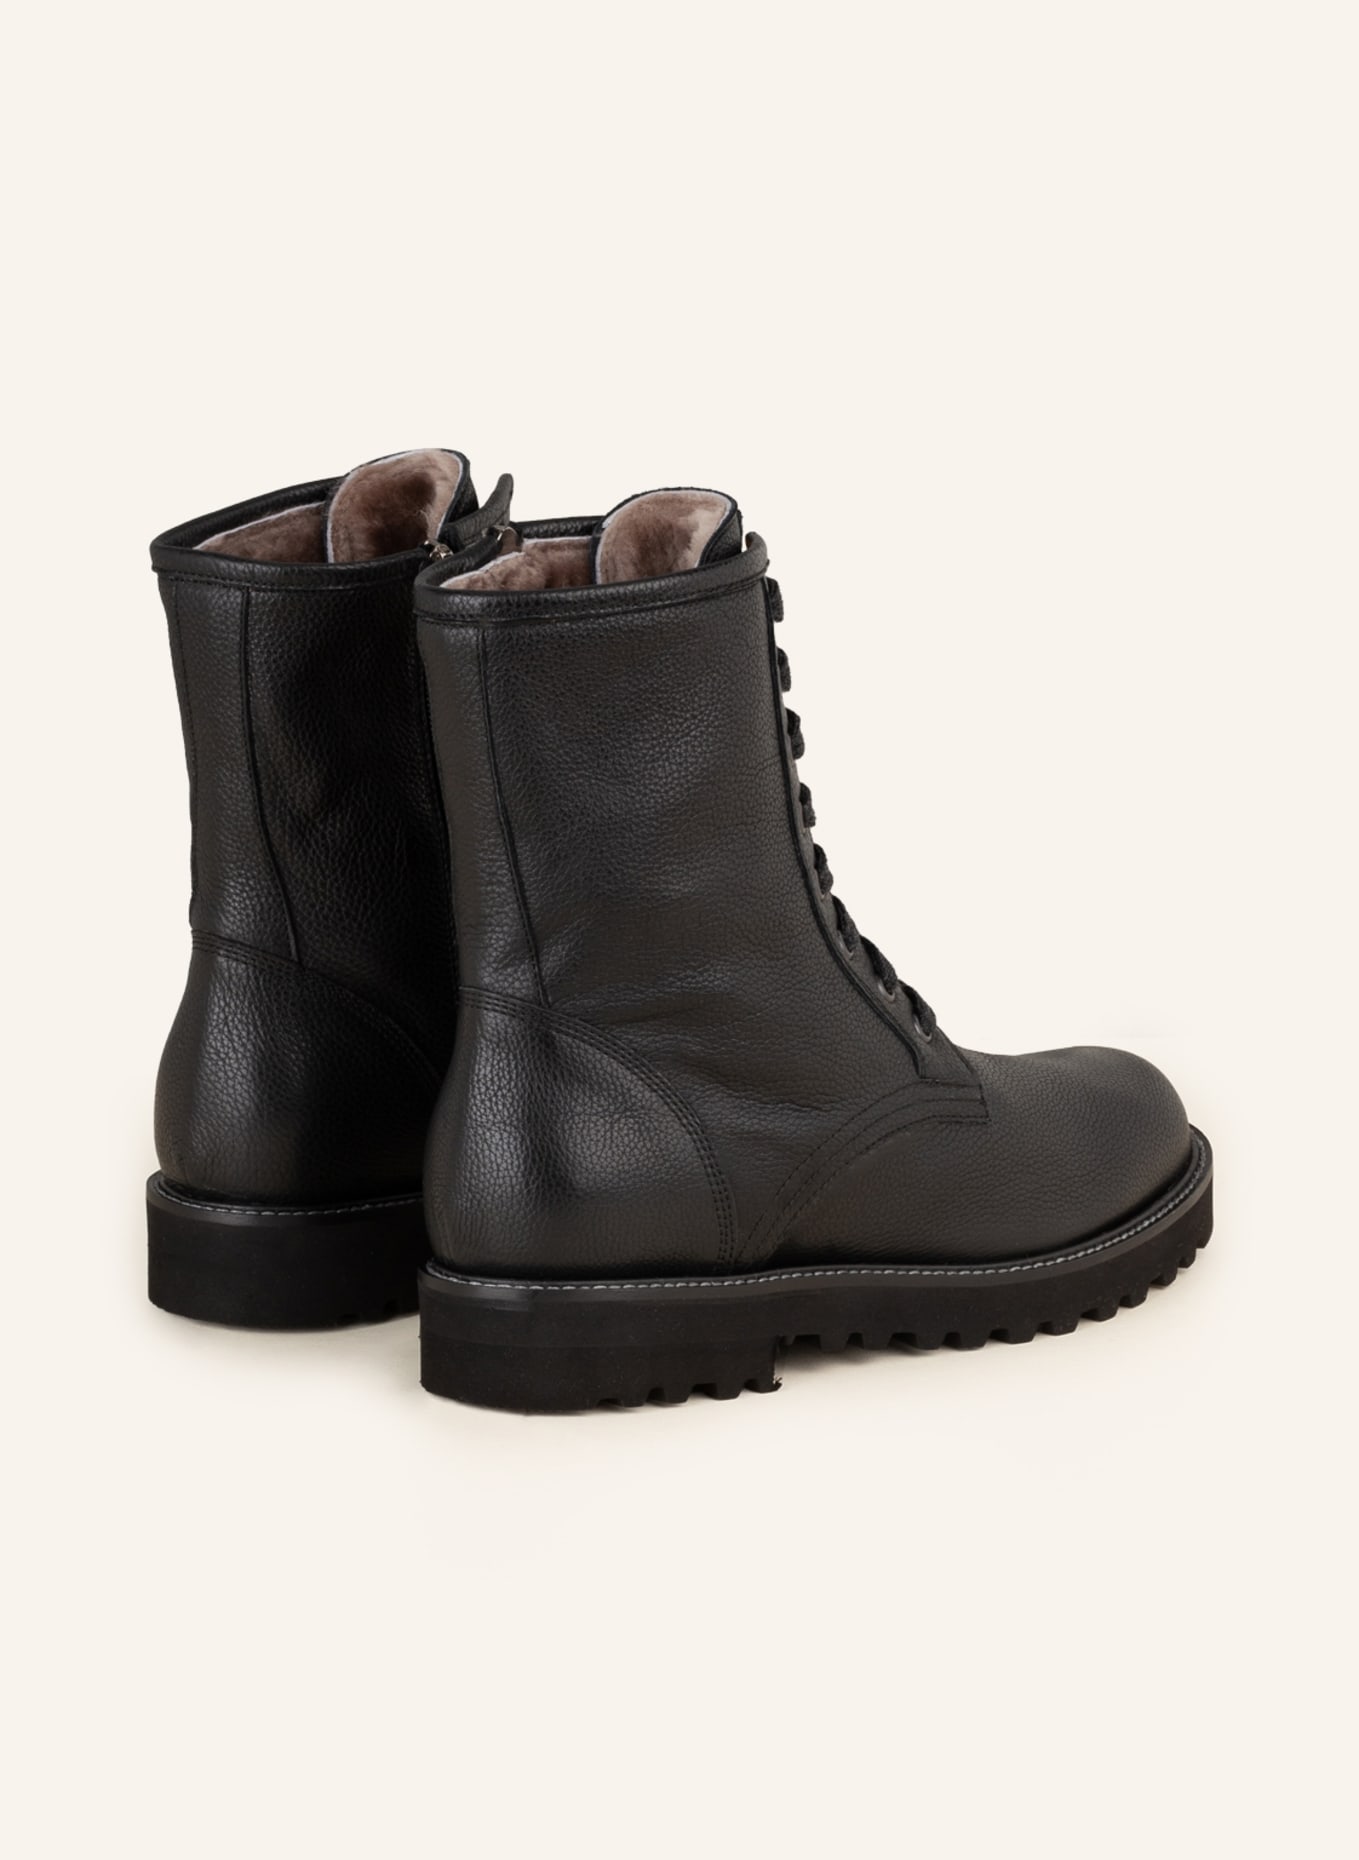 VIAMERCANTI Lace-up boots, Color: BLACK (Image 2)